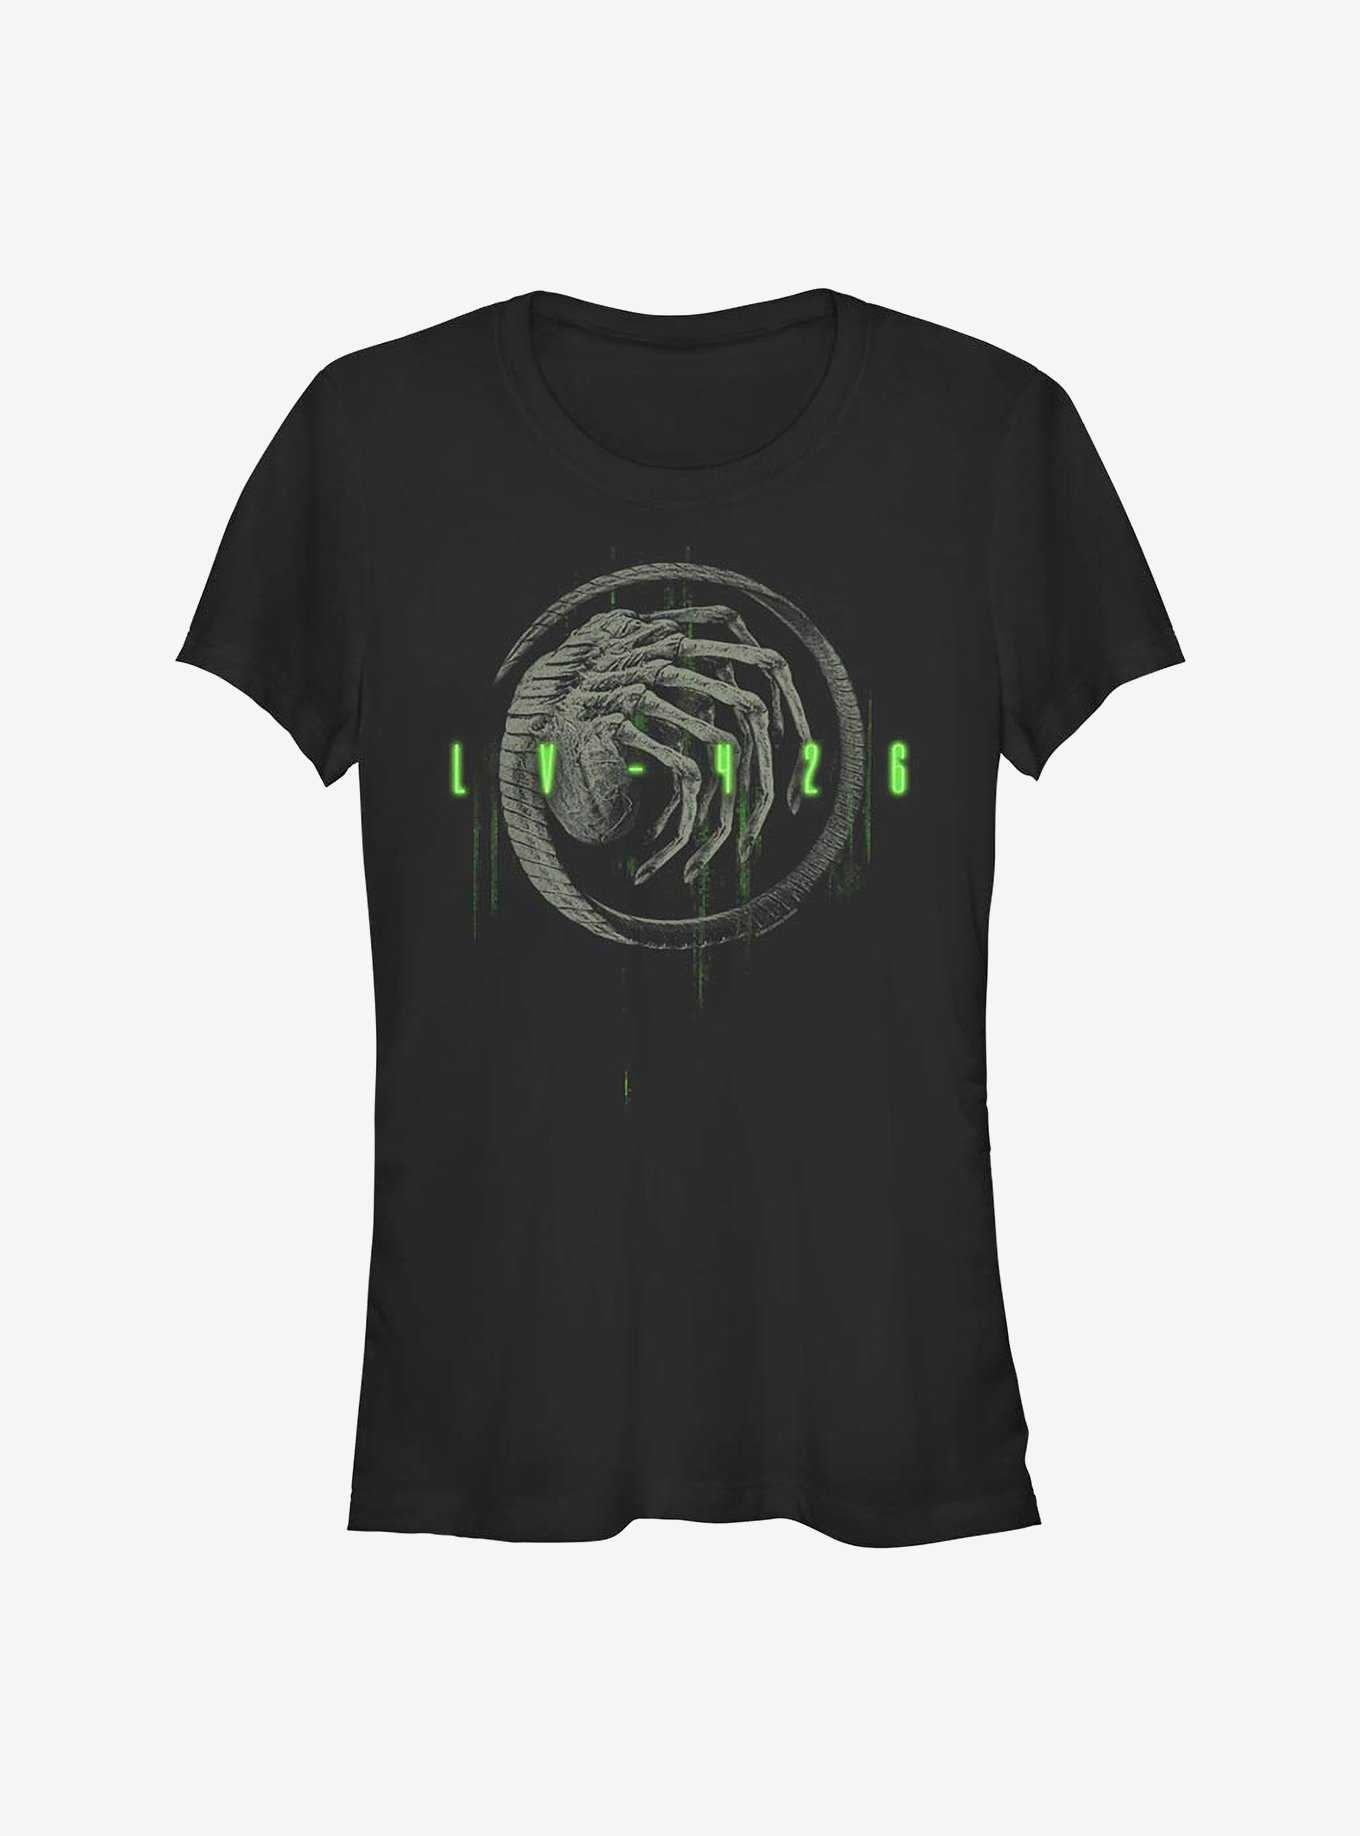 Alien LV-426 Girls T-Shirt, , hi-res